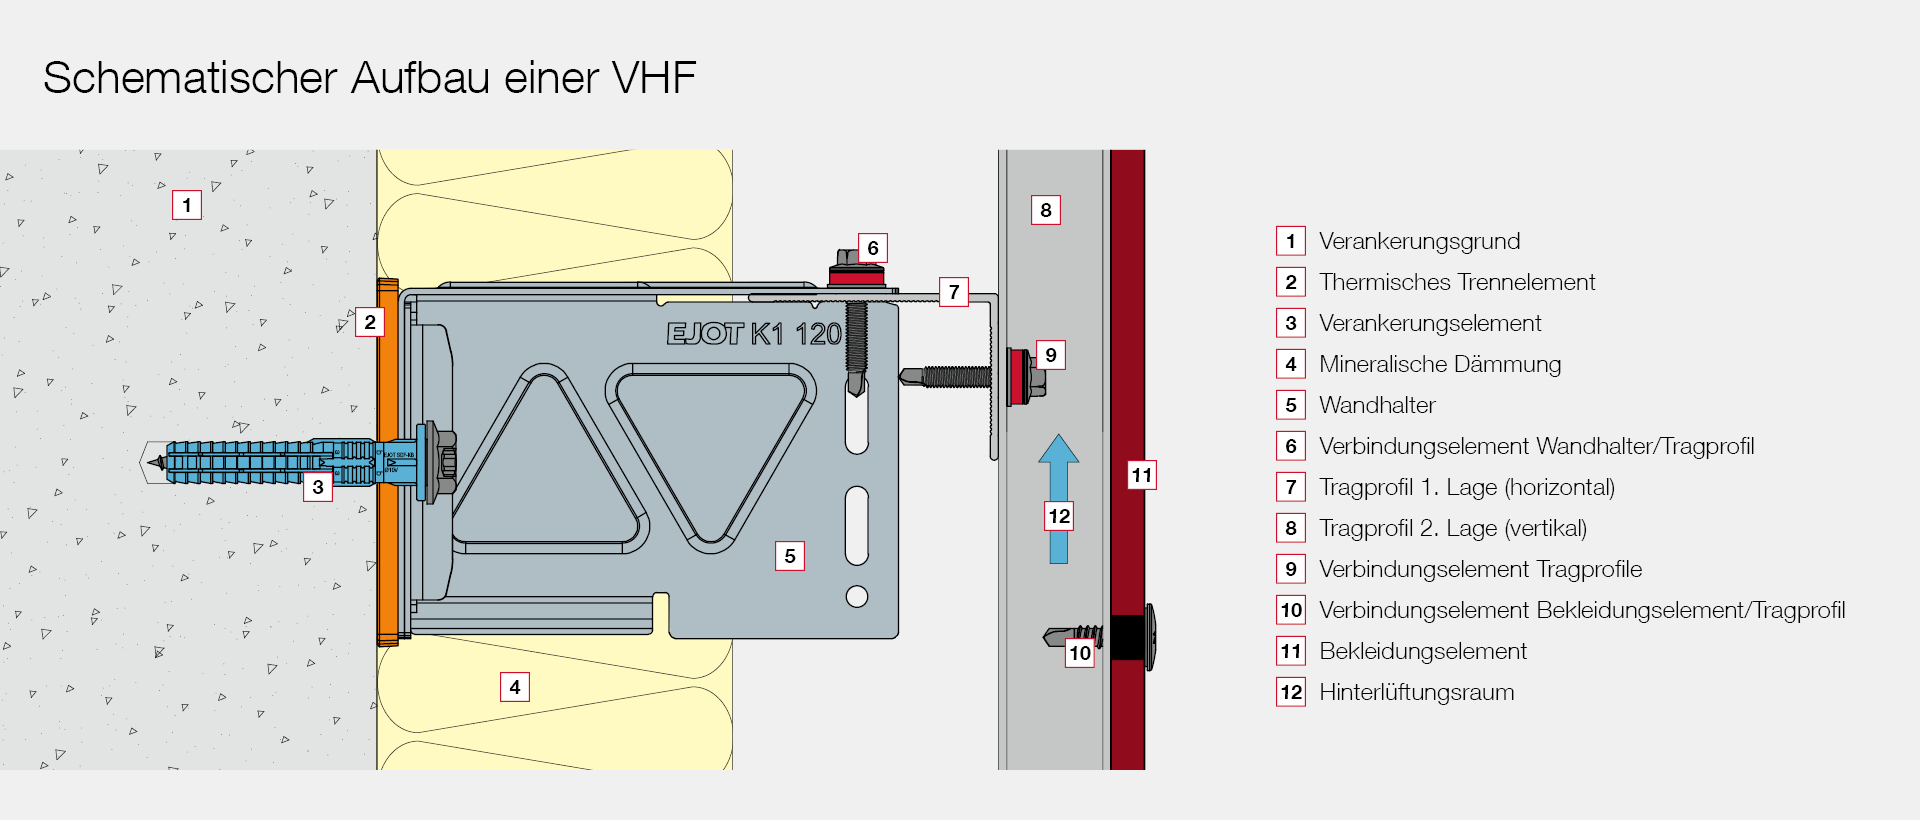 Schematischer Aufbau einer VHF